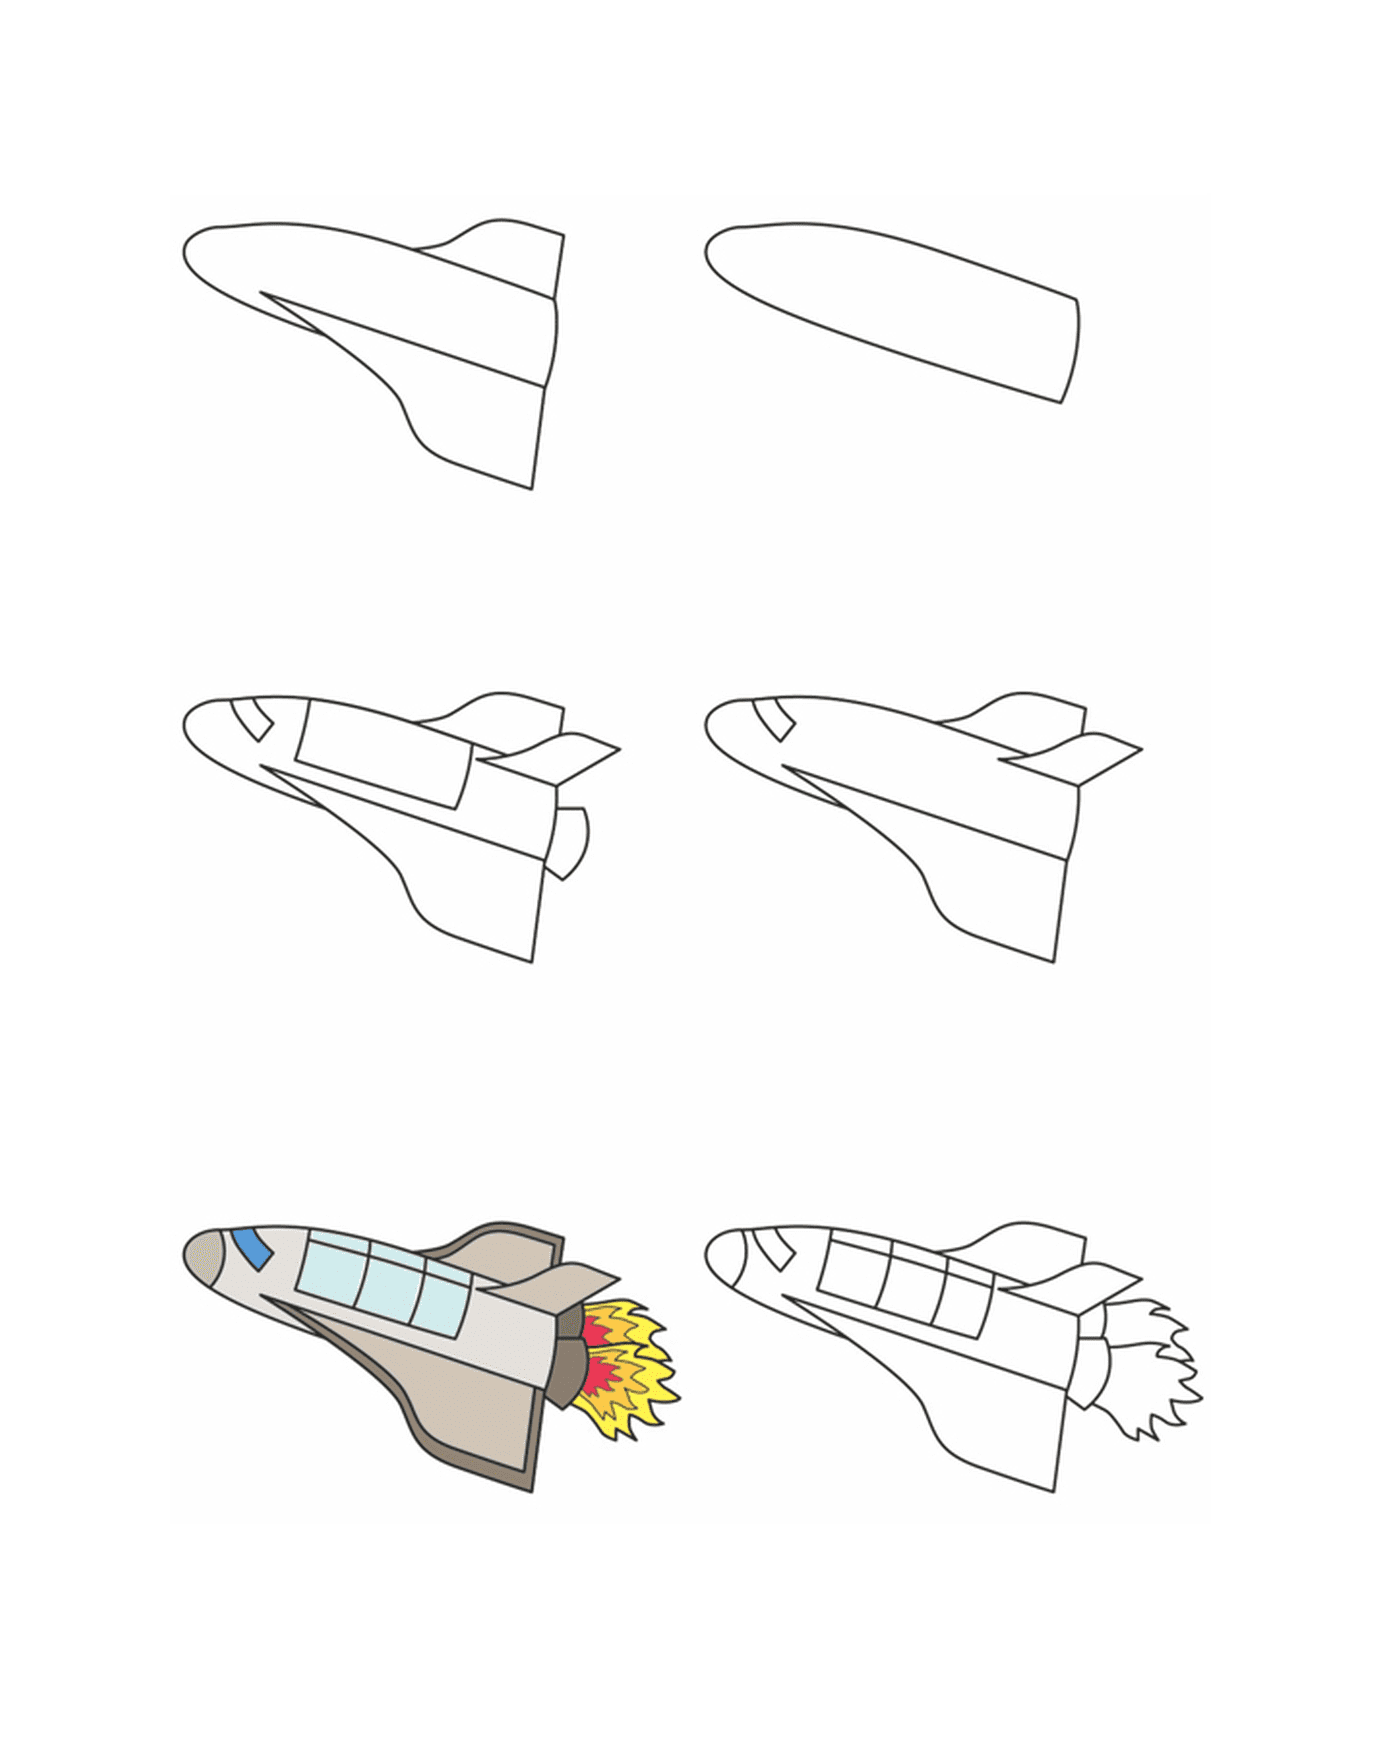  Cómo dibujar un transbordador espacial 